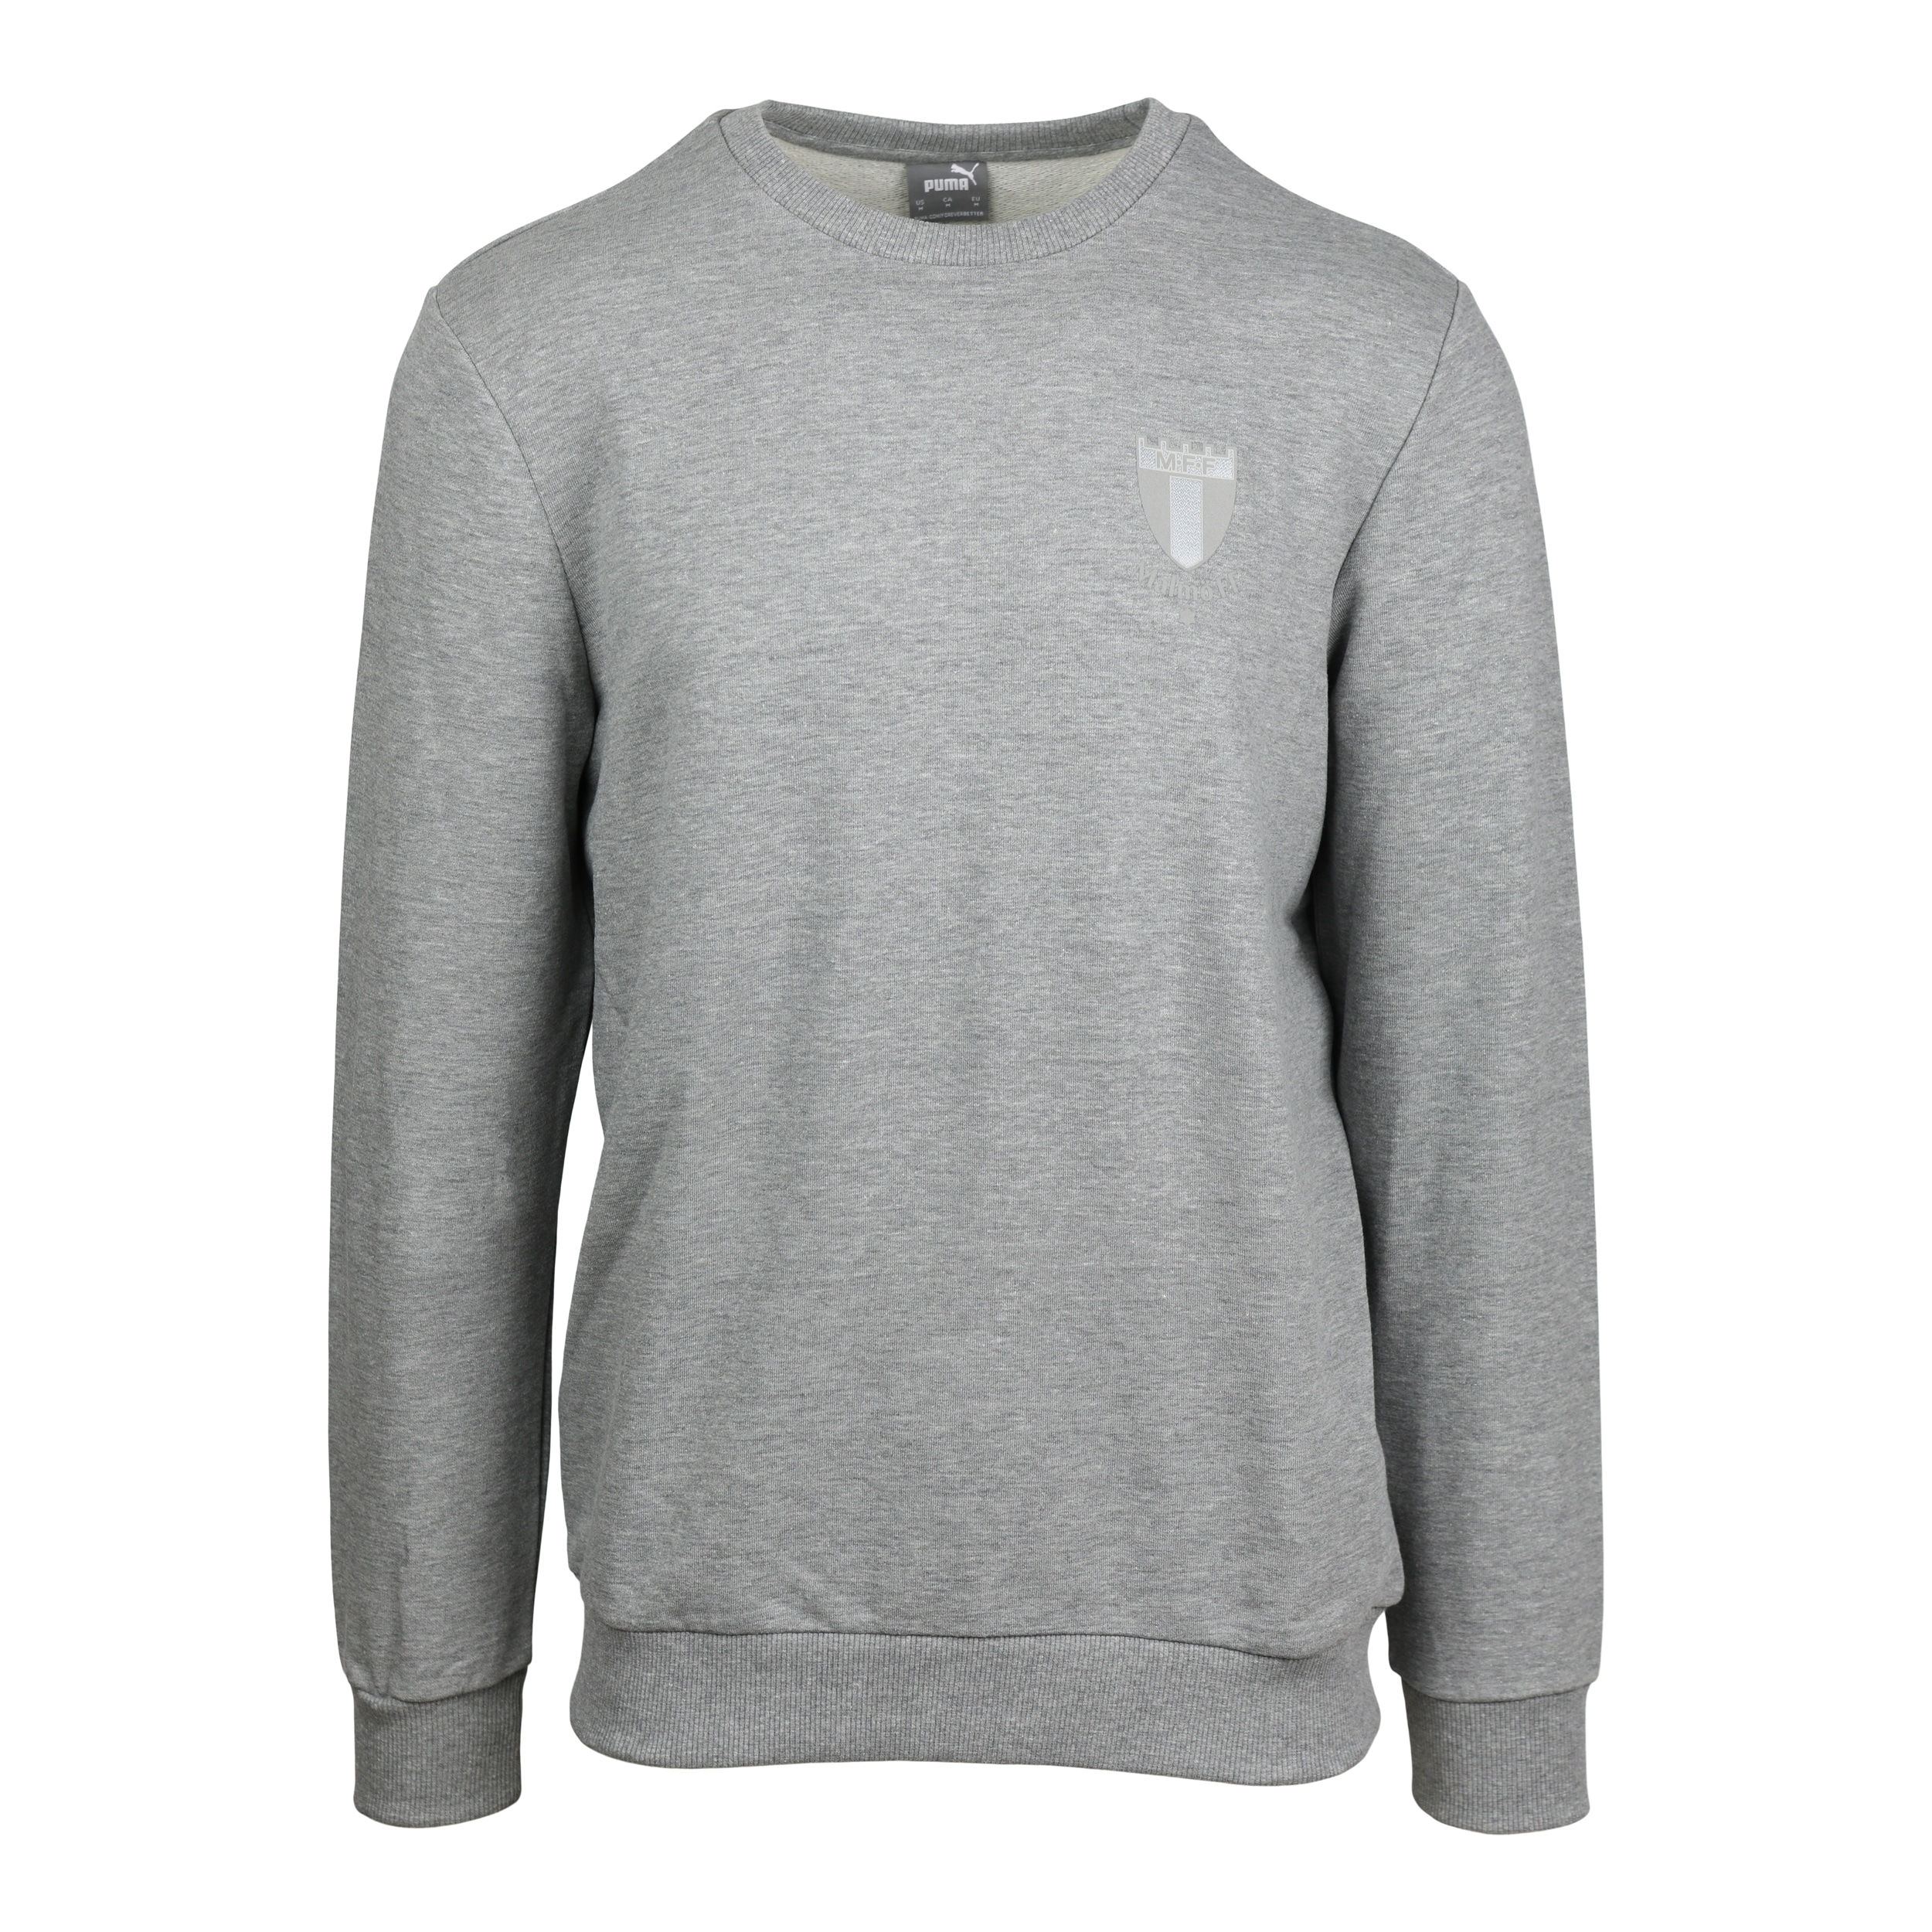 Puma sweater grå